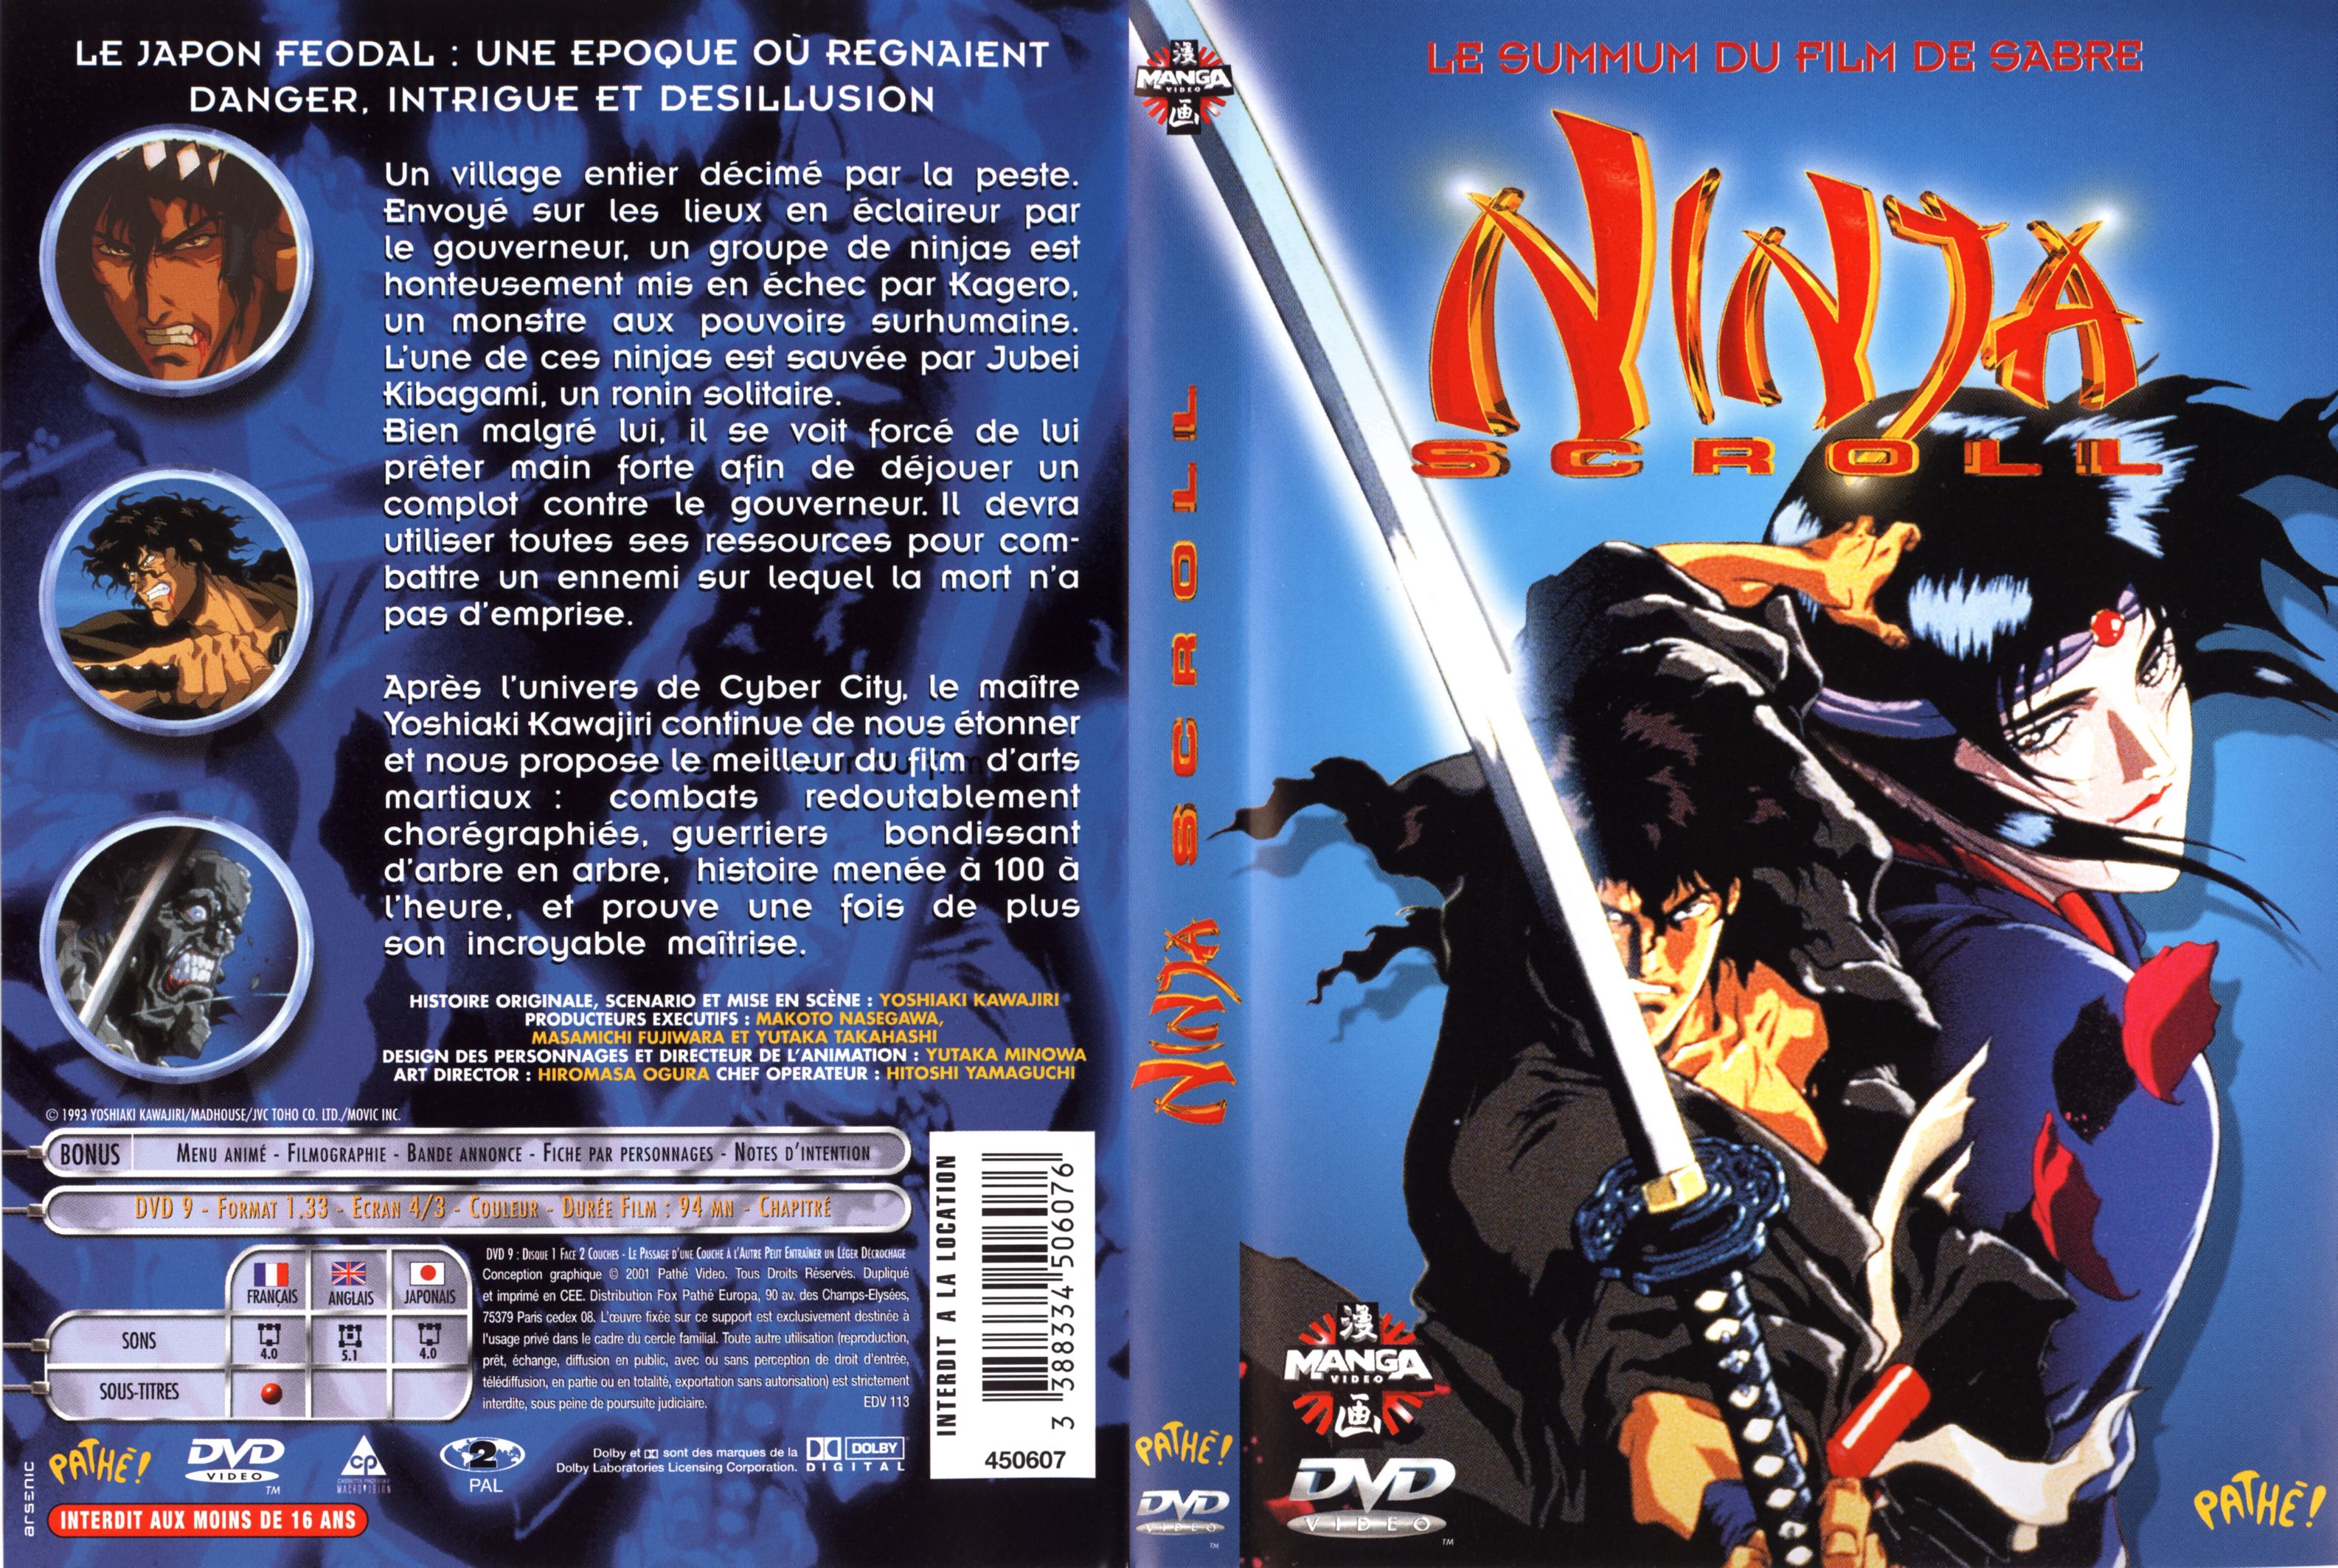 Jaquette DVD Ninja scroll